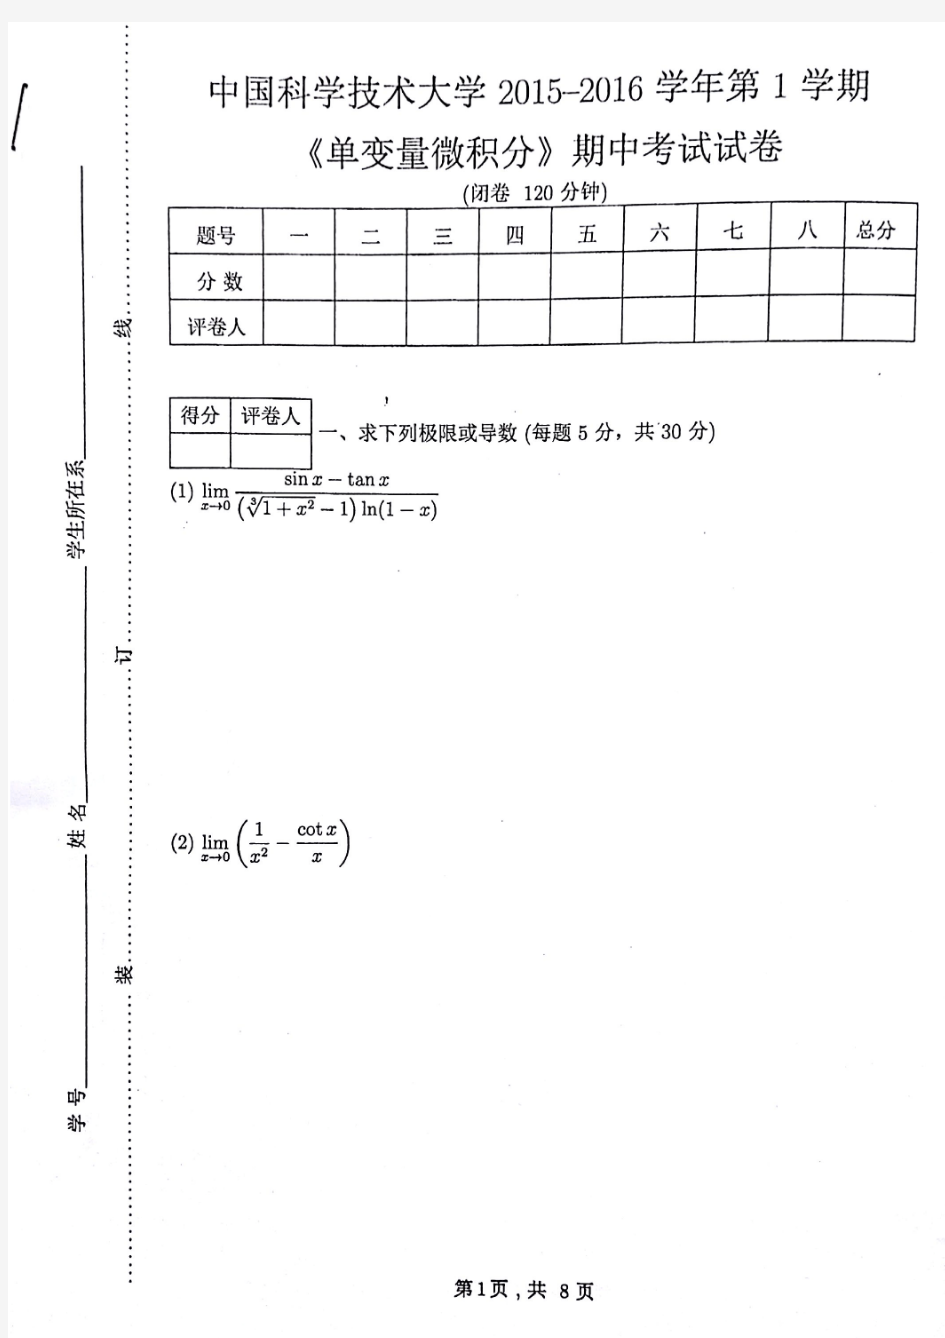 中国科学技术大学2015—2016学年第一学期《单变量微积分》期中考试试卷(1)